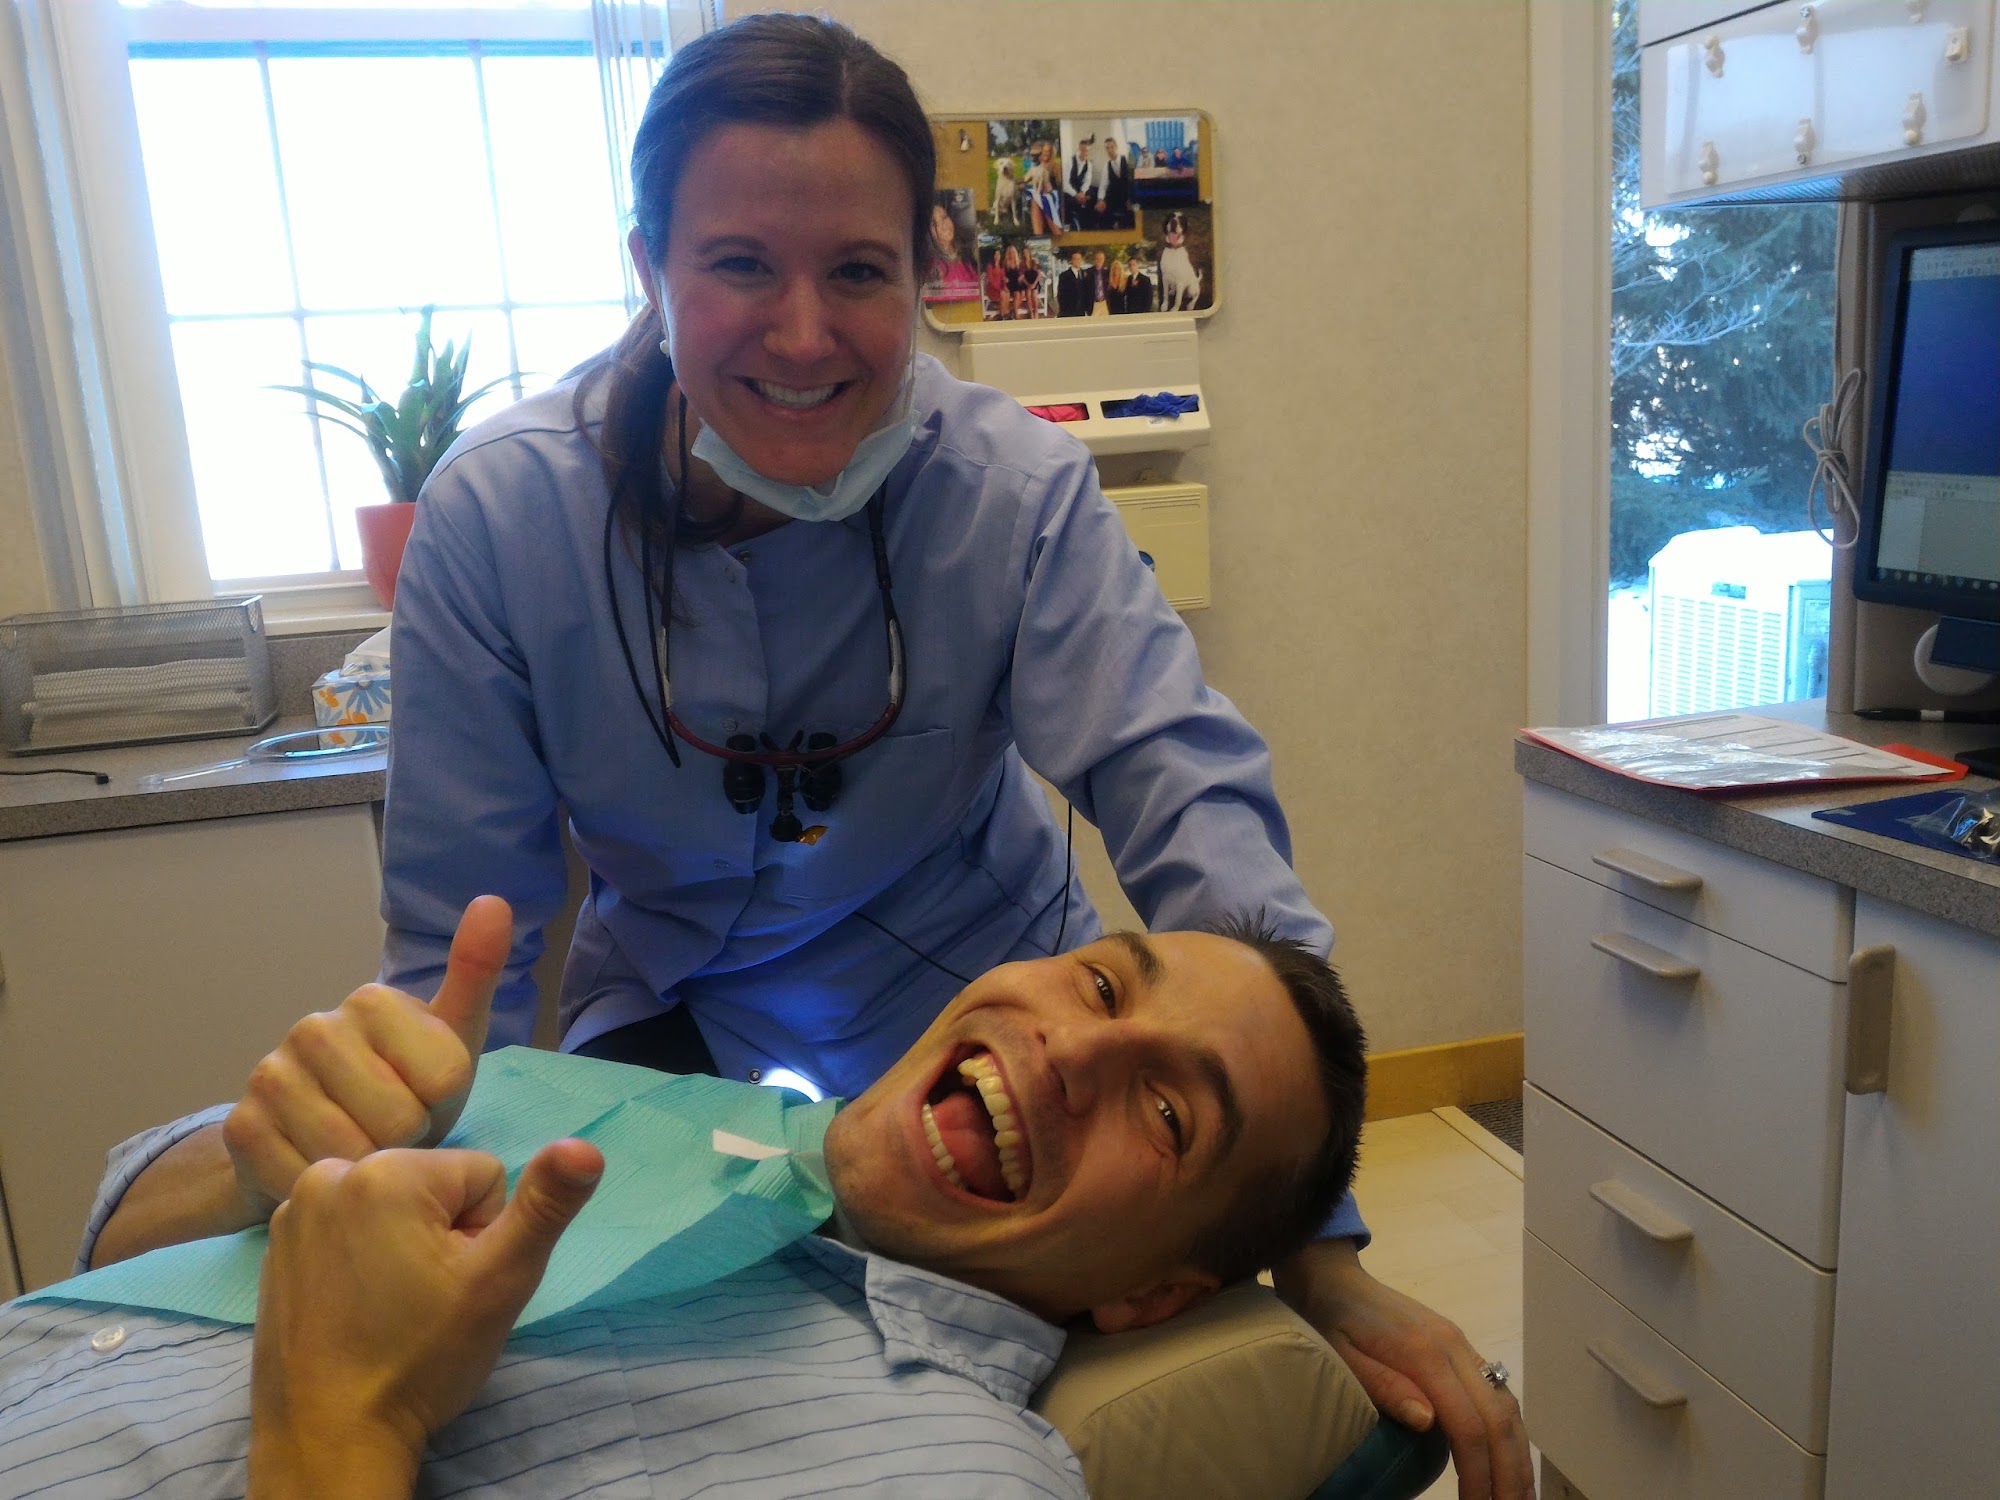 Yentz Family Dentistry